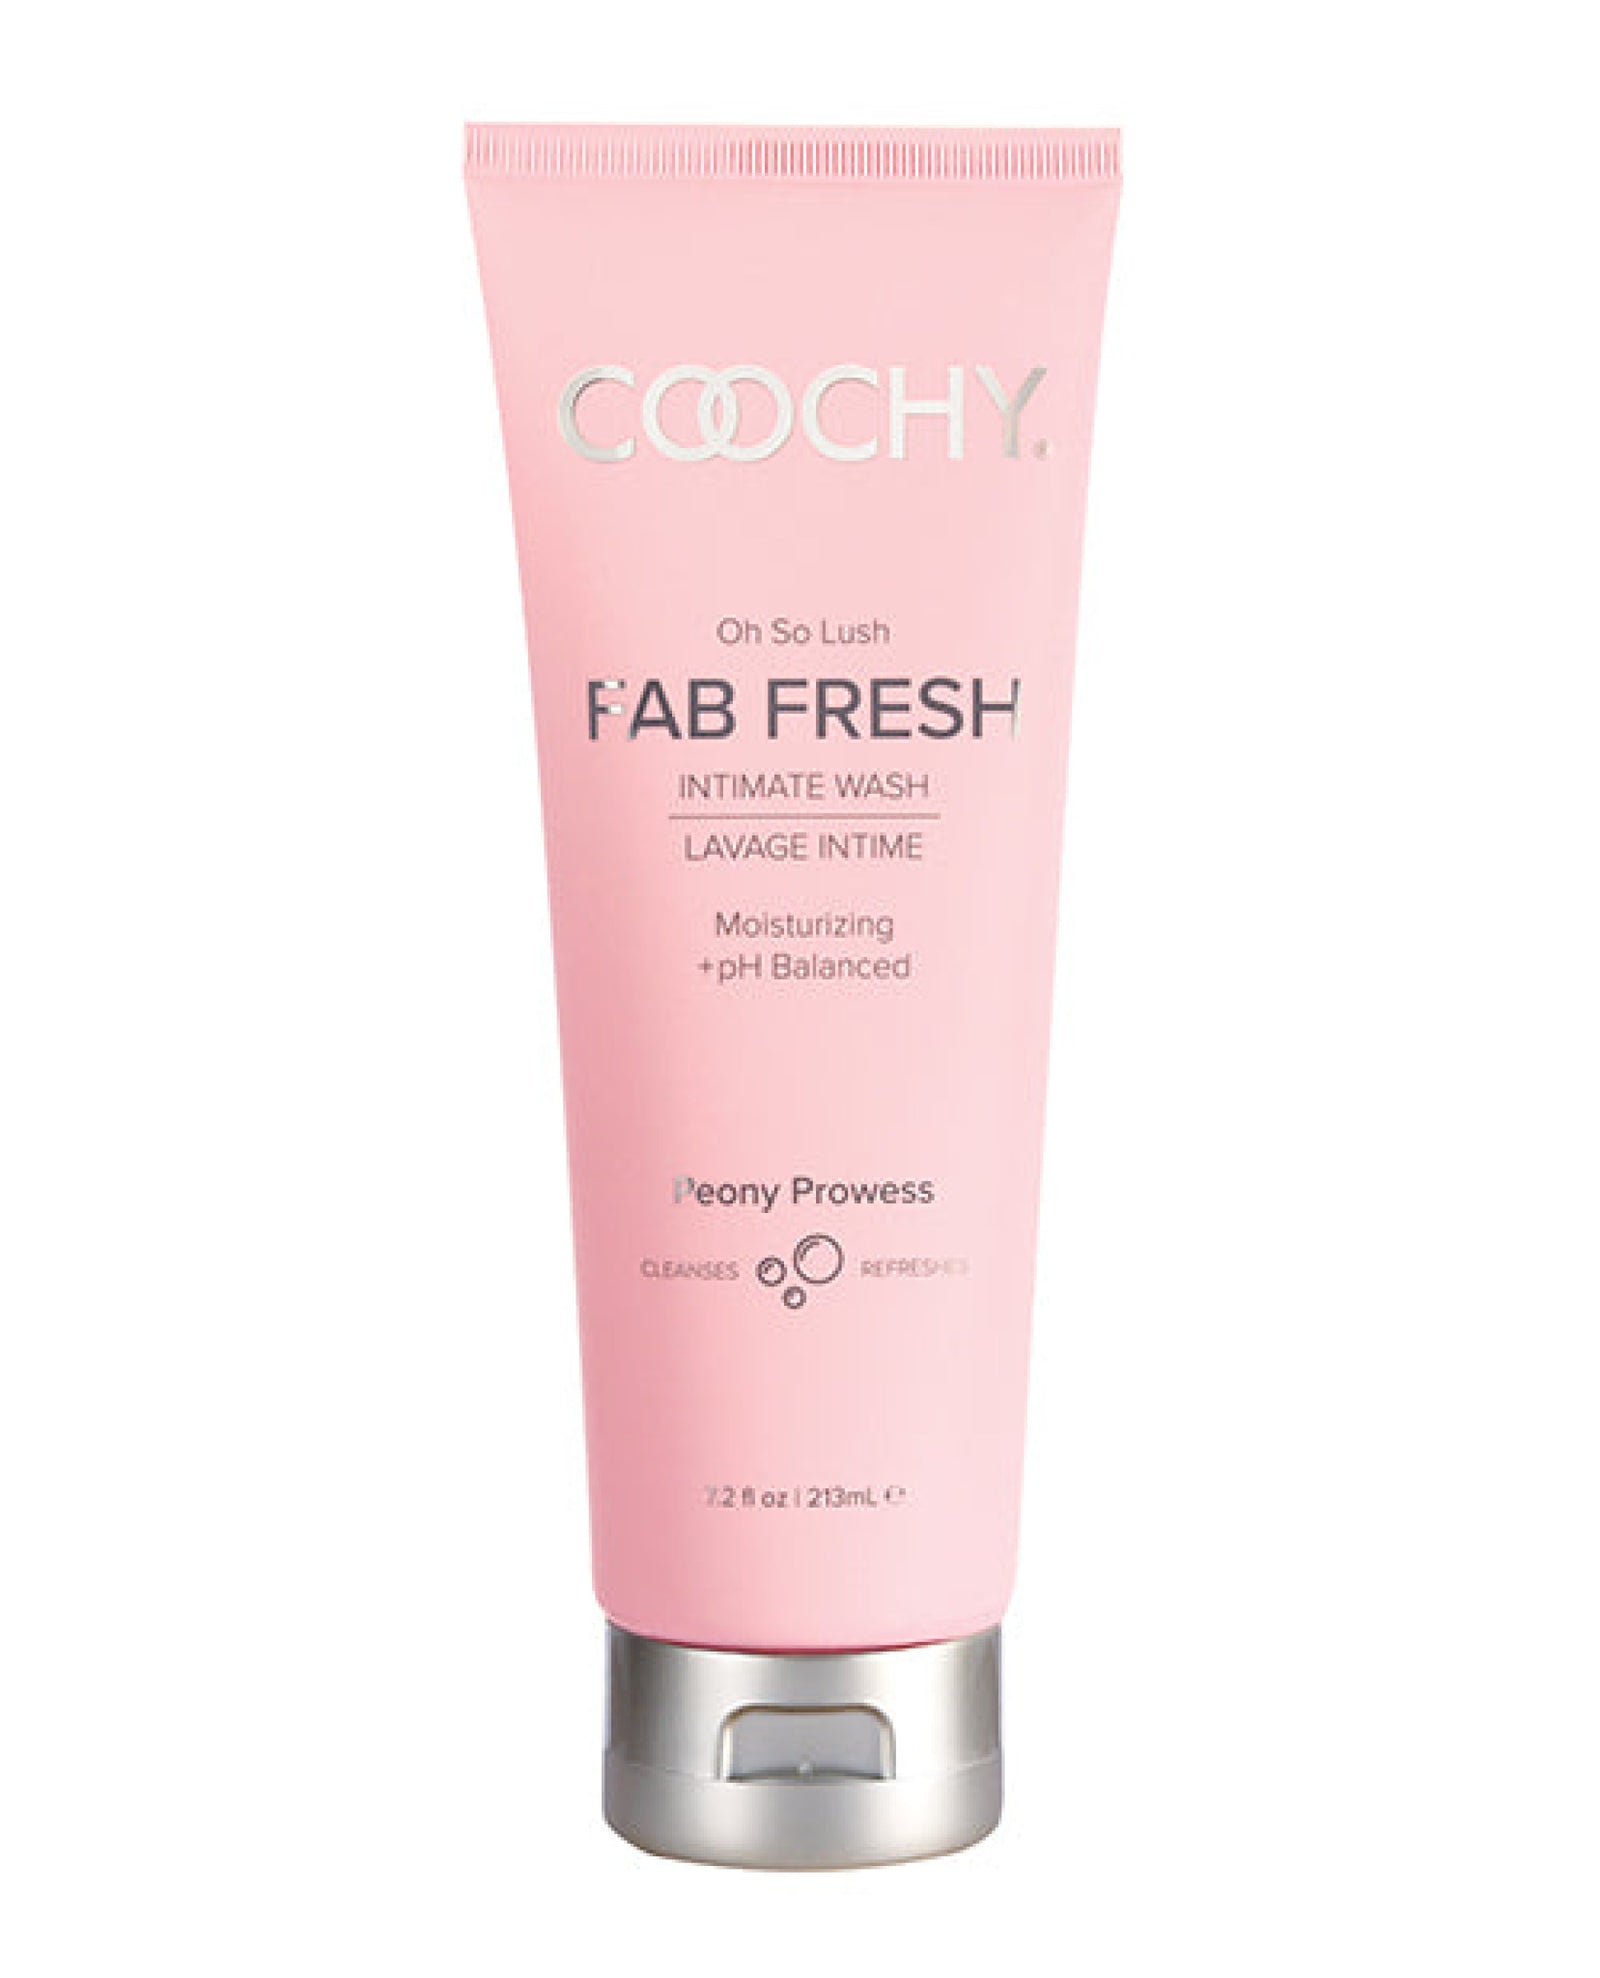 Coochy Fab Fresh Feminine Wash - 7.2 Oz Classic Brands